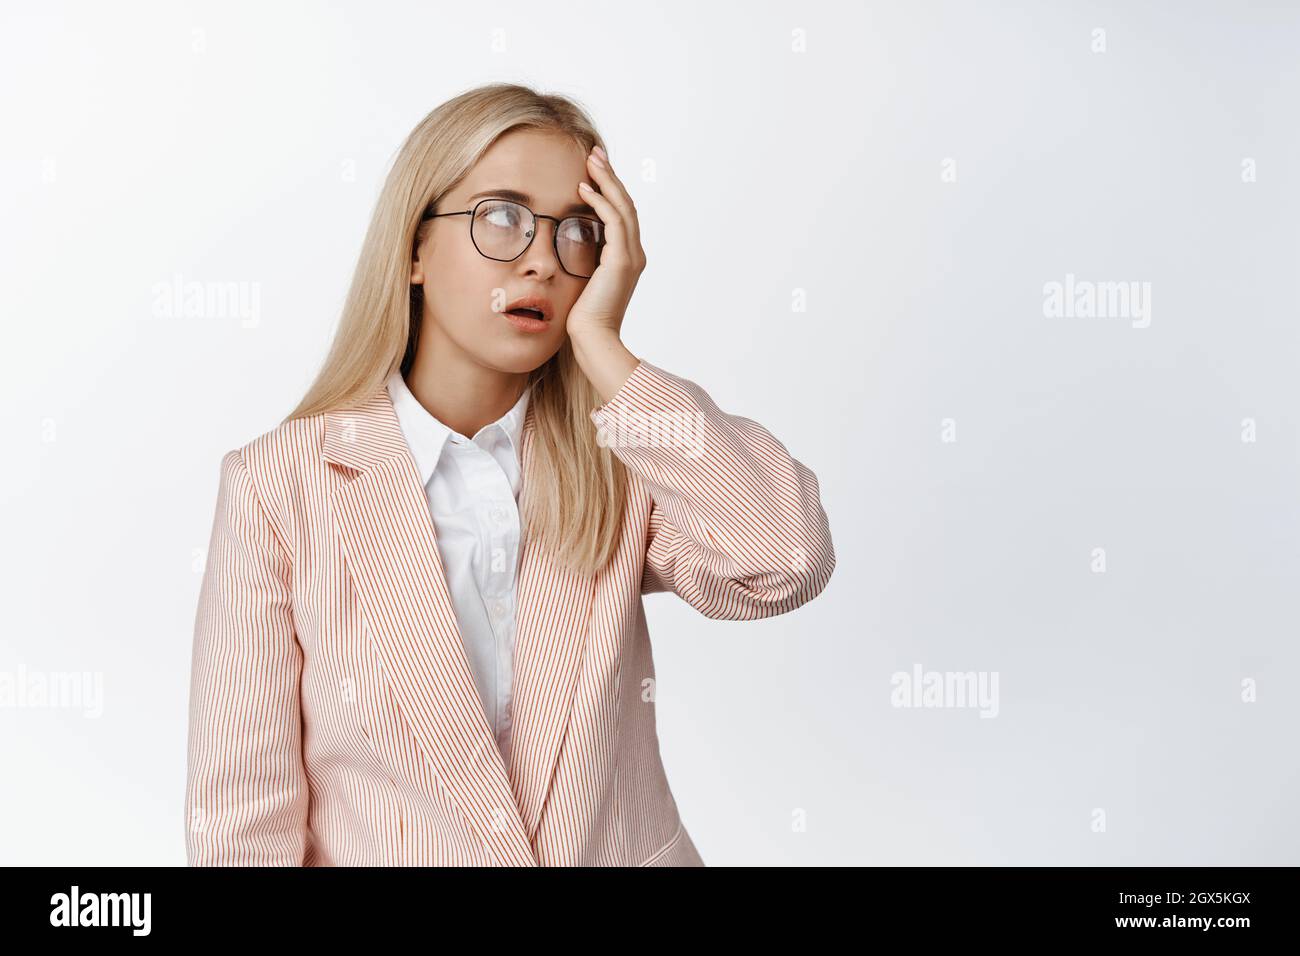 Jeune employée de bureau agacée, yeux roulés et visage fatigués, irrités avec quelque chose, debout dans le costume et les lunettes sur fond blanc Banque D'Images